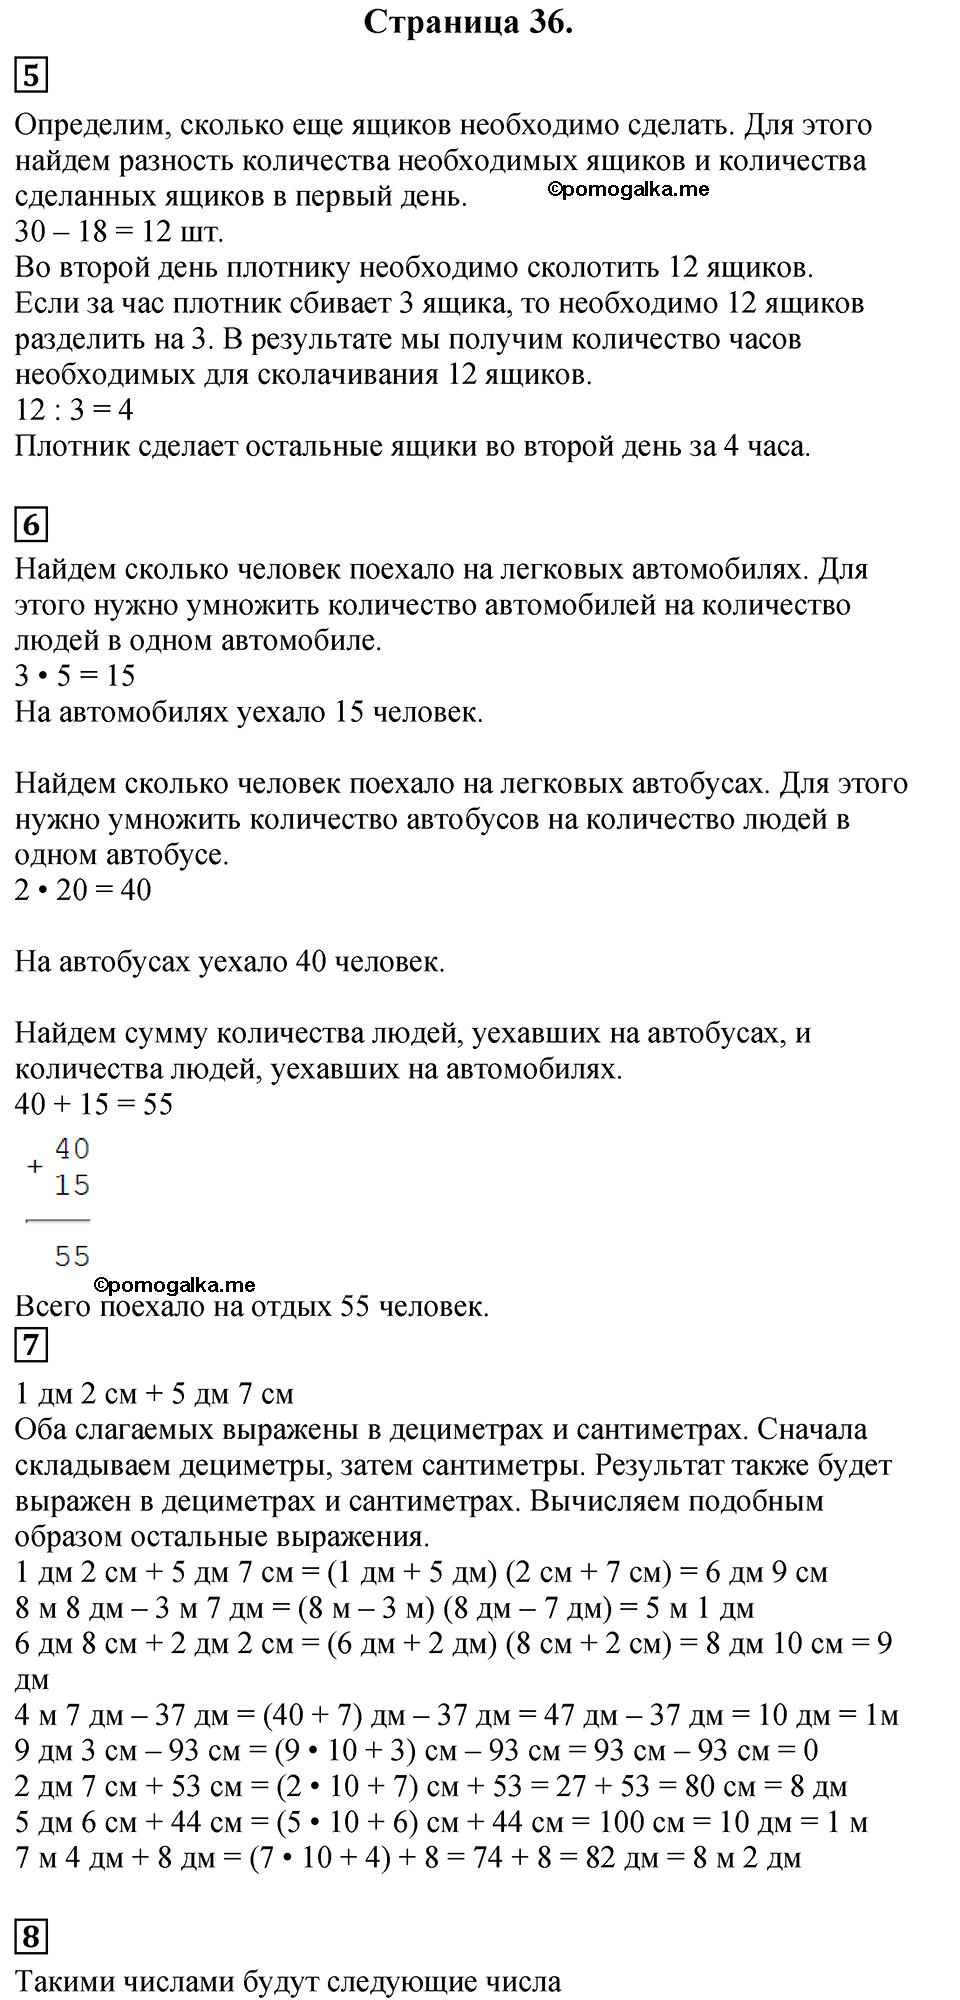 Страница №36 Часть 1 математика 3 класс Дорофеев